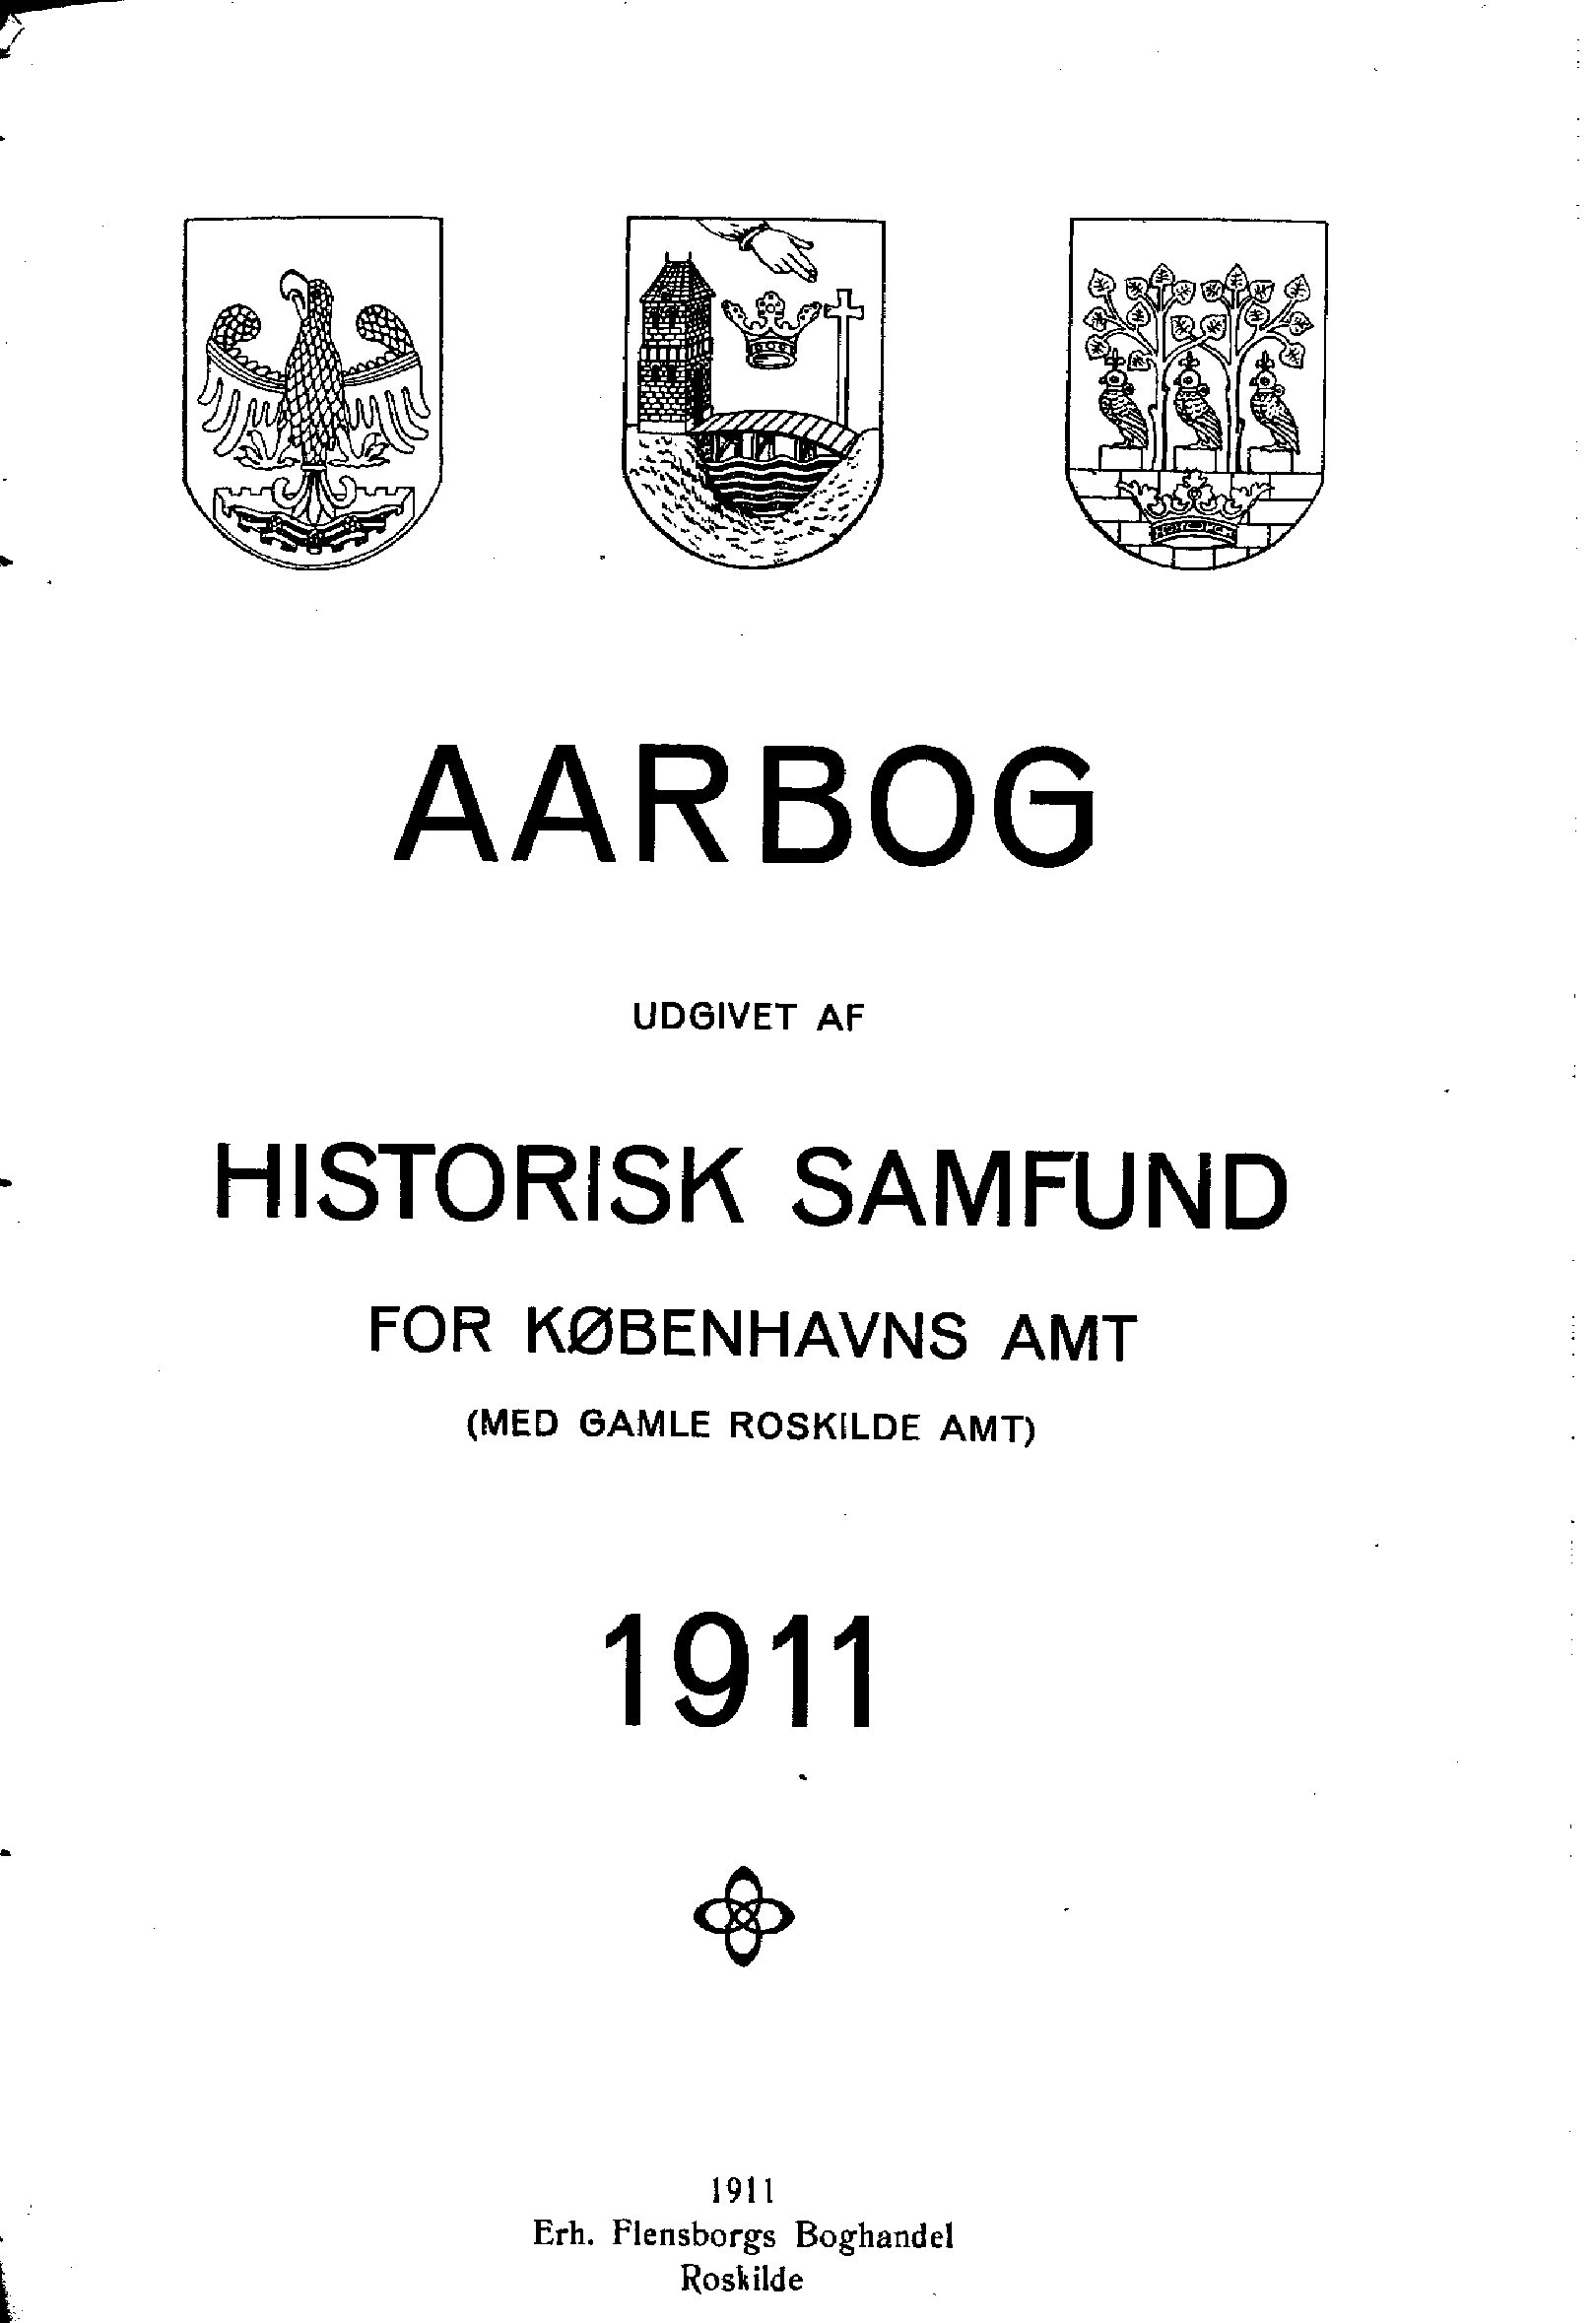 					Se Nr. 1 (1911): Aarbog udgivet af Historisk Samfund for Københavns Amt (med Gamle Roskilde Amt) 1911
				